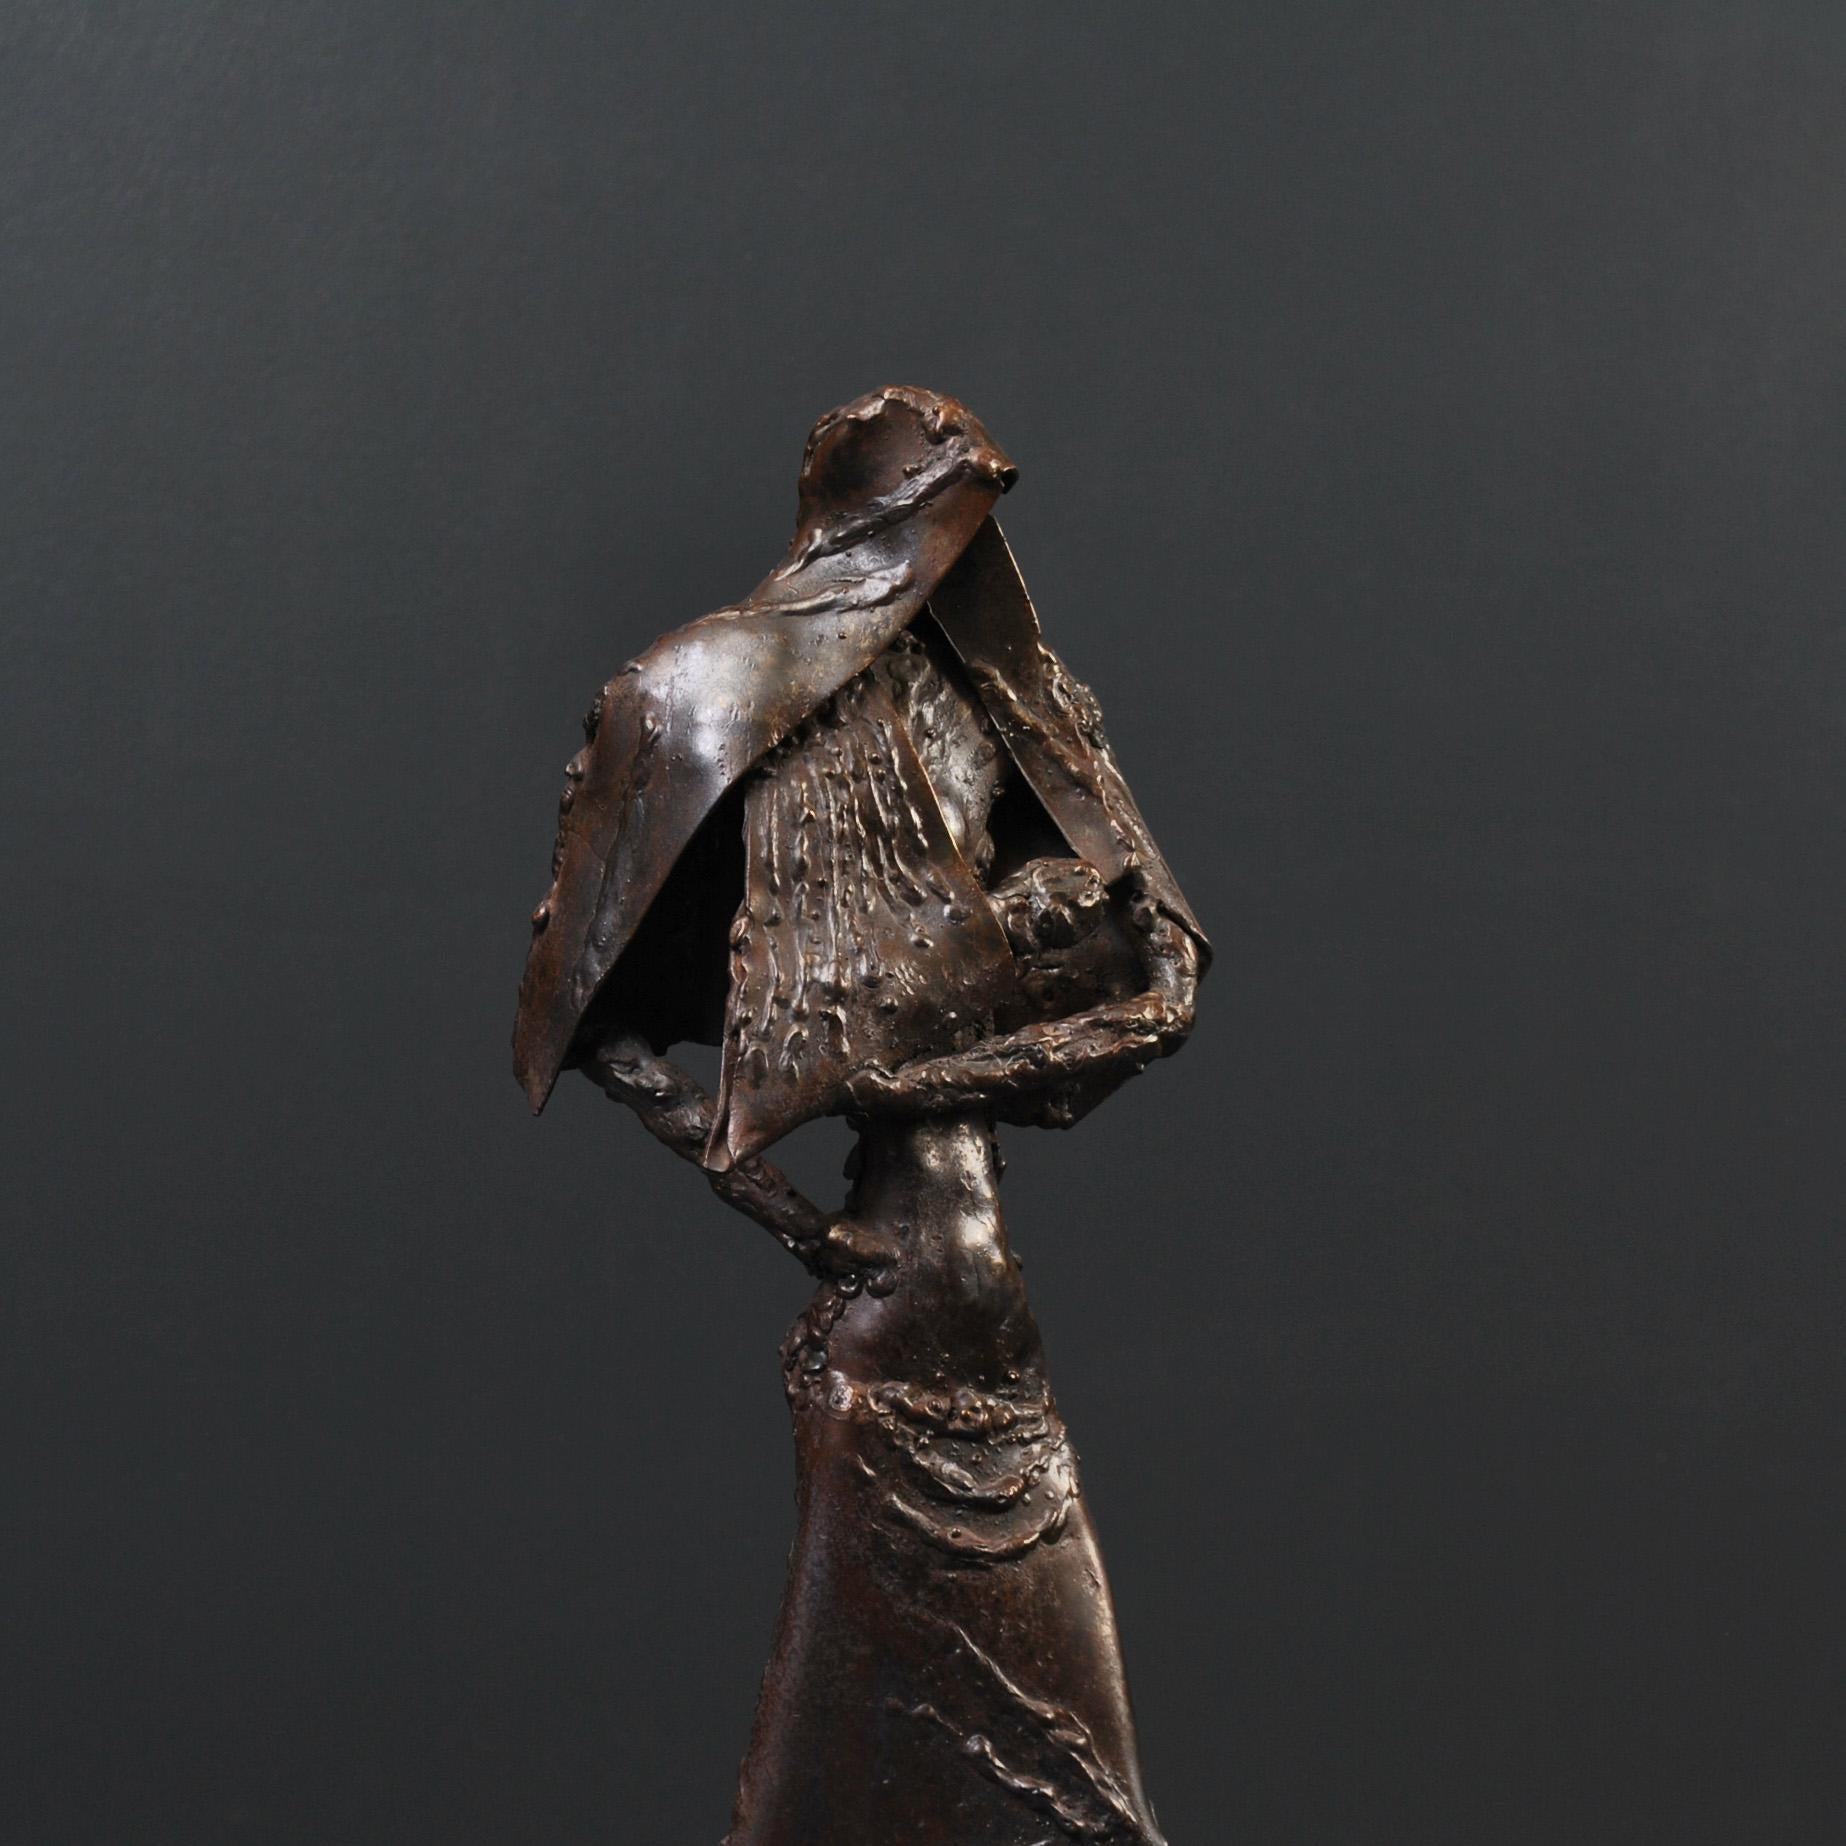 Eine englische Skulptur aus der Mitte des 20. Jahrhunderts mit einer Frau und einem kleinen Kind. Hergestellt aus Stahl mit Schweißnähten und Metallkonstruktionstechniken auf einem Sockel aus massivem Marmor.
Ein recht ungewöhnliches Kunstwerk mit